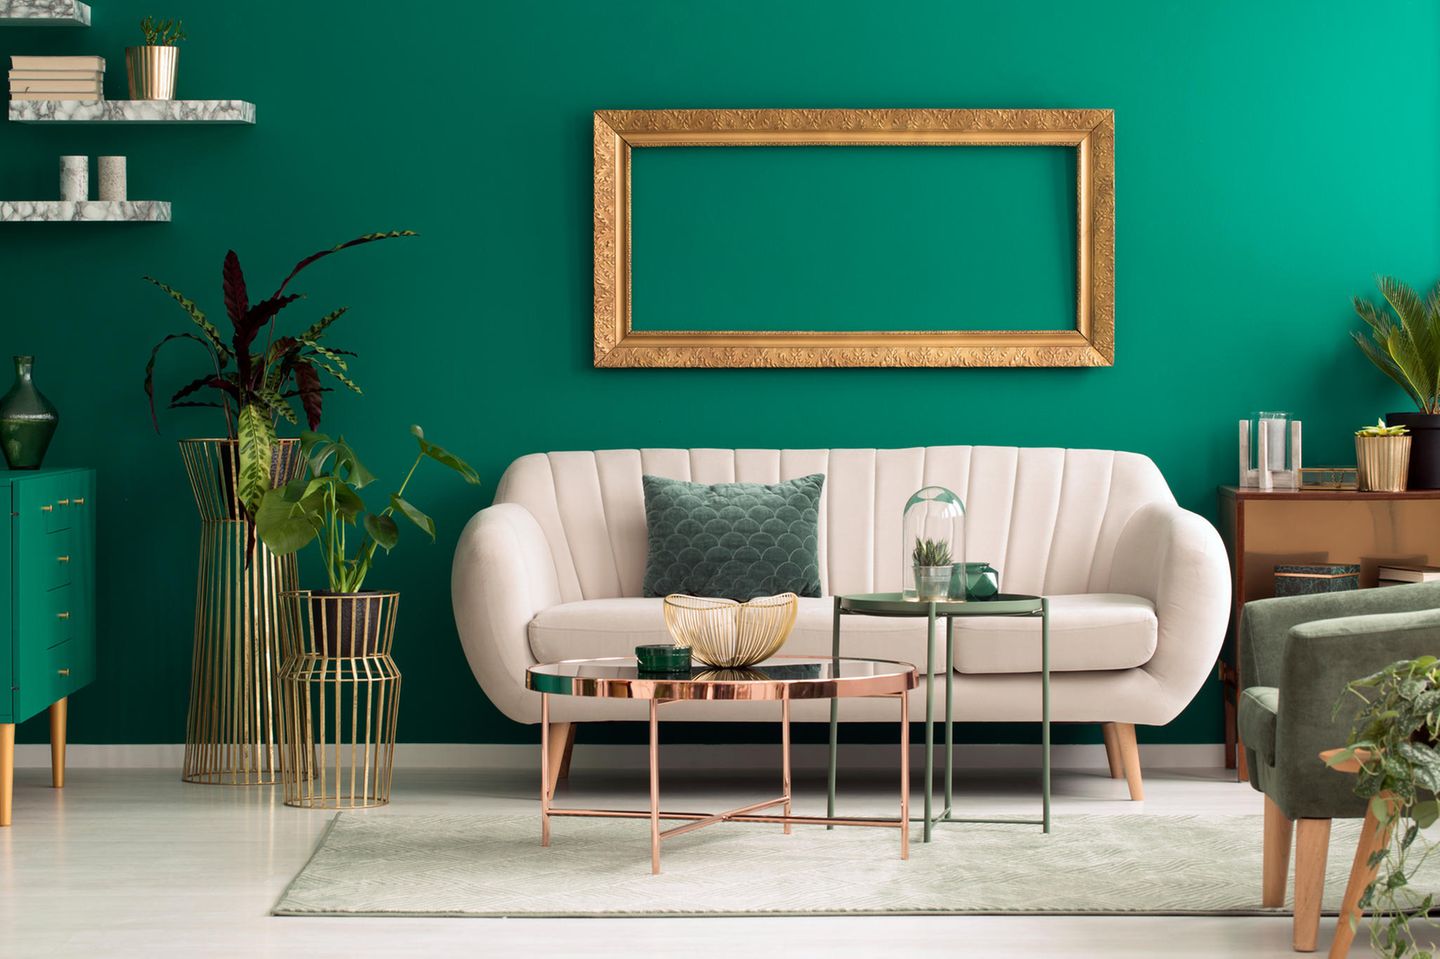 Wohnung teurer wirken lassen: Weiße Couch, smaragdgrüne Wand, Dekoelemente